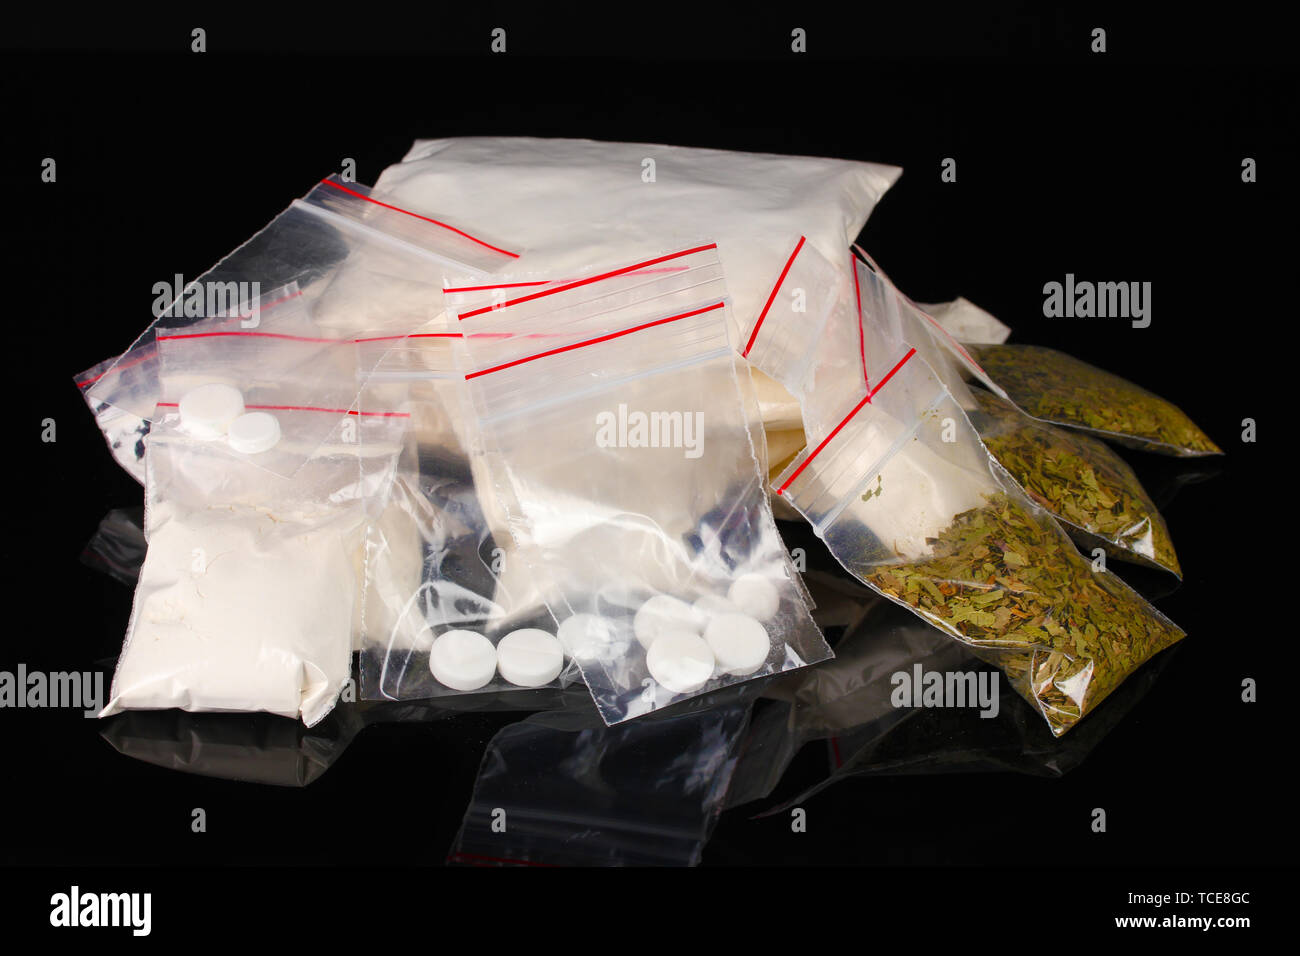 Cocaina e marijuana in pacchetti su sfondo nero Foto Stock